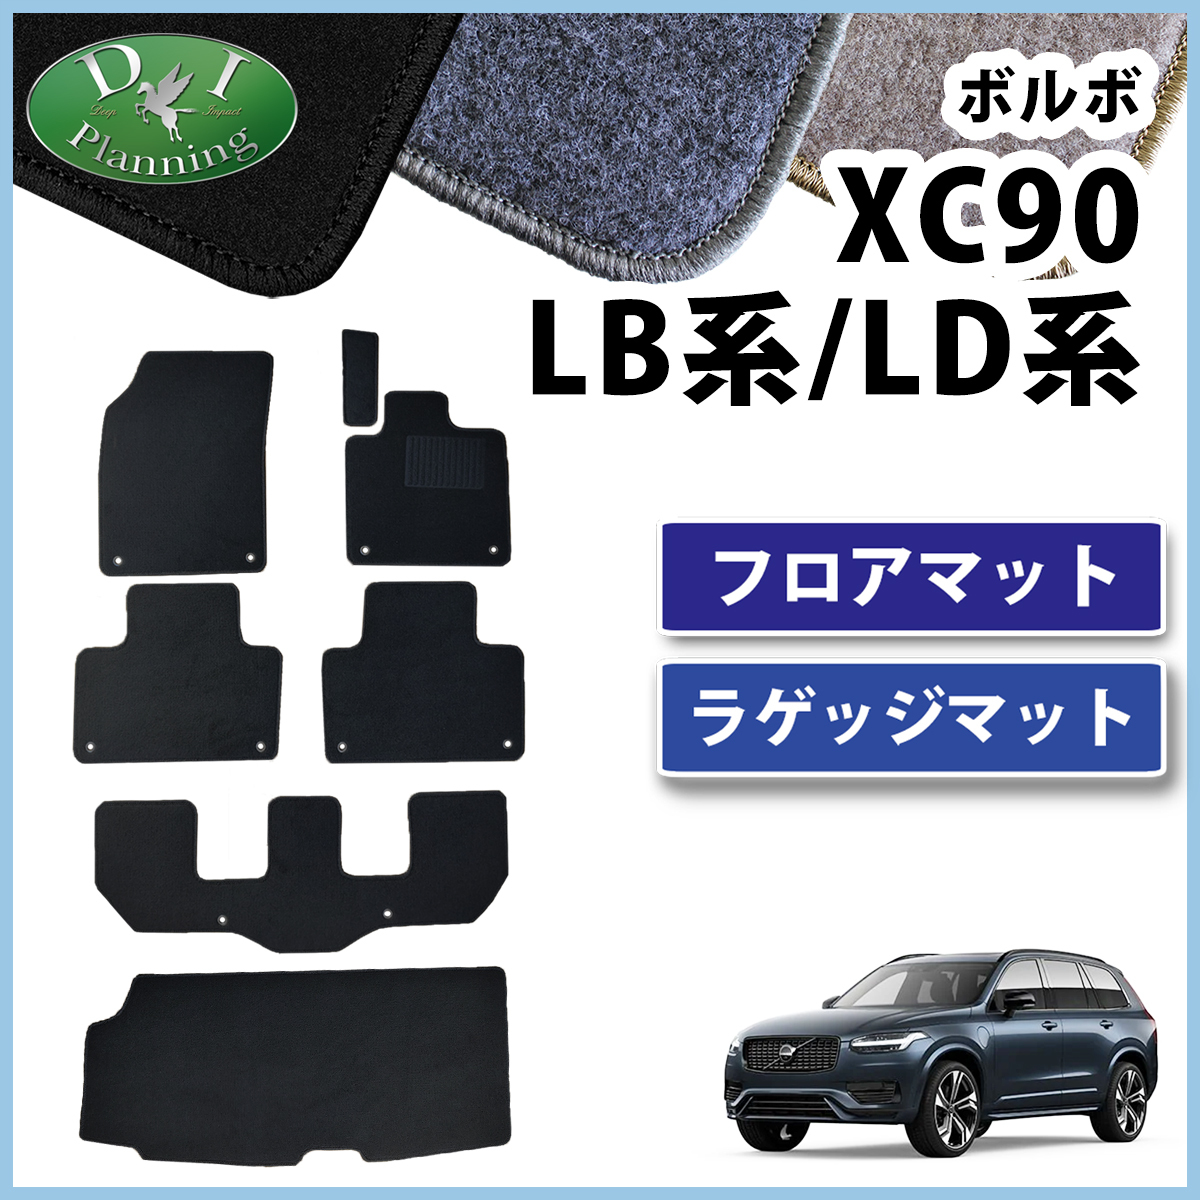  Volvo XC90 [ коврик на пол & багажный коврик ] DX детали багажный ga балка багажник салон сиденье mo- men tamR дизайн машина сопутствующие товары 